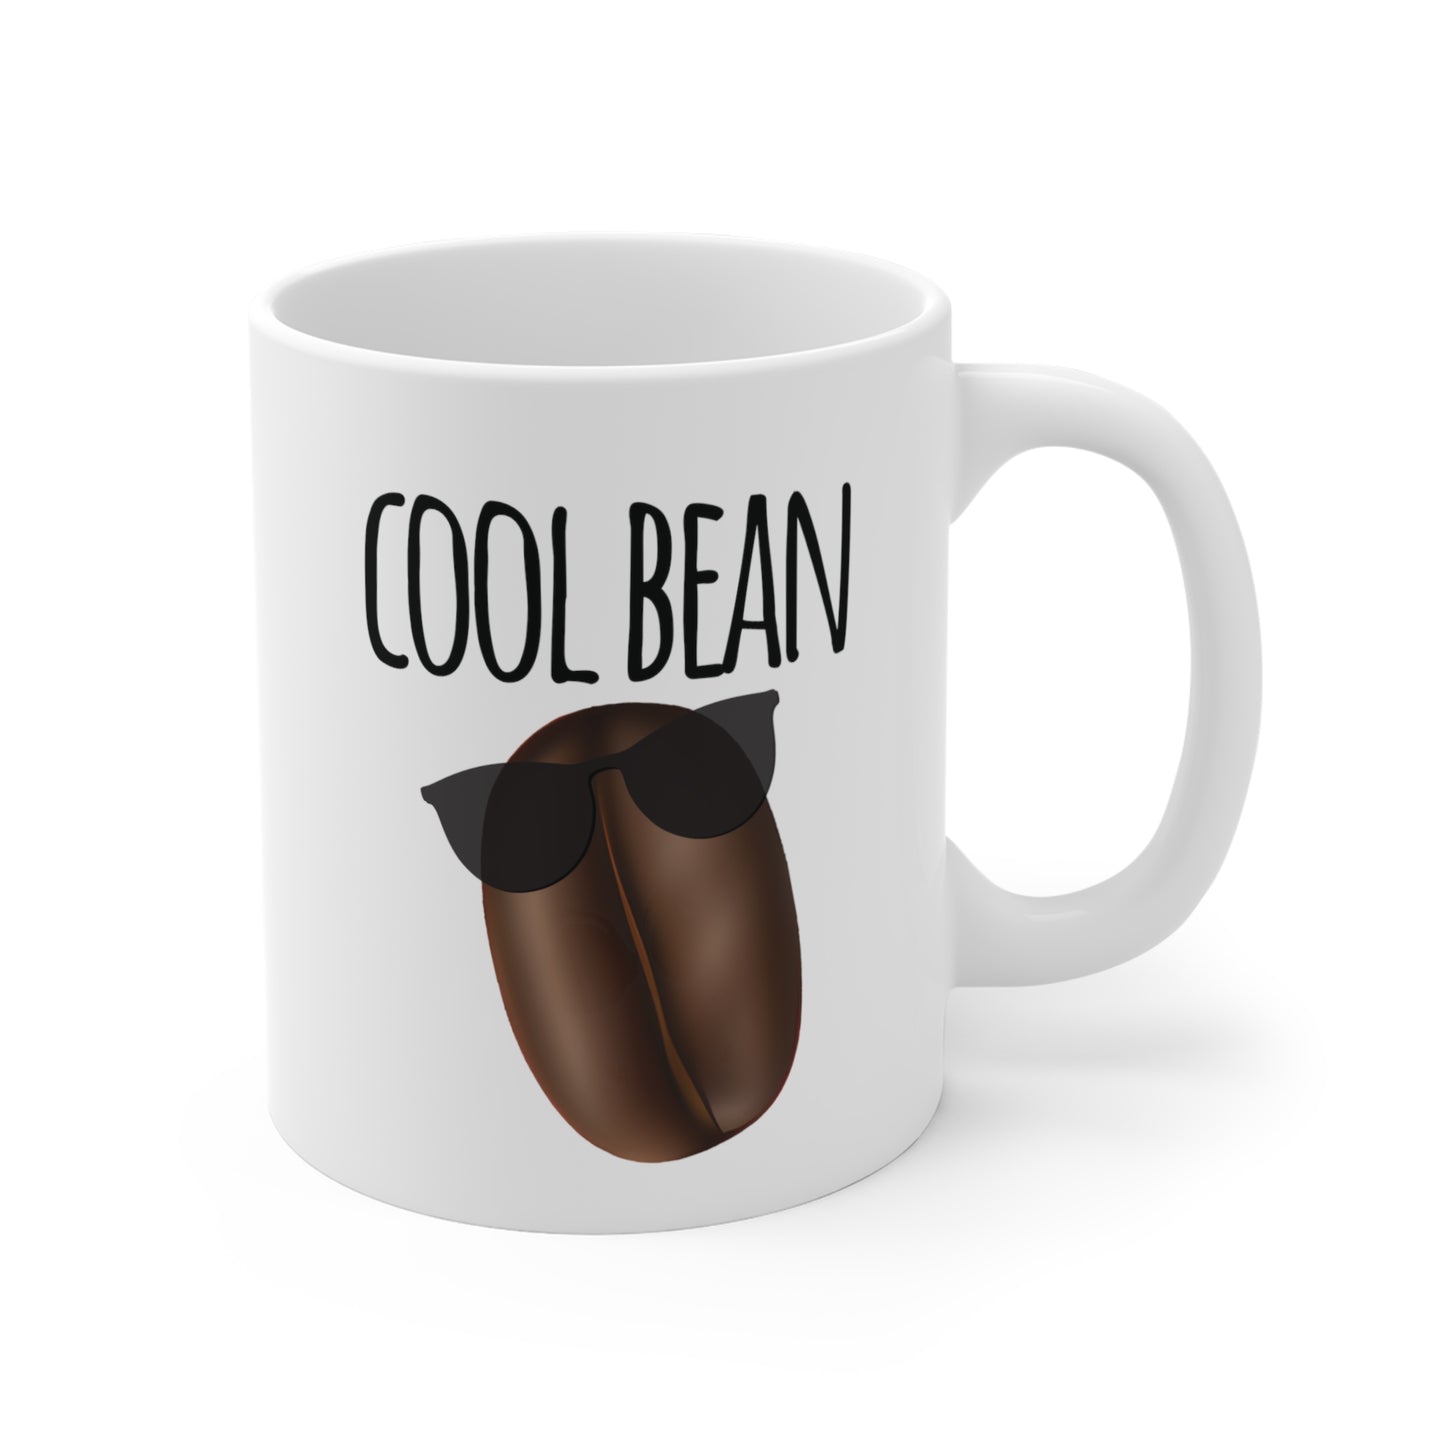 Cool Bean Mug, Funny Coffee Mug